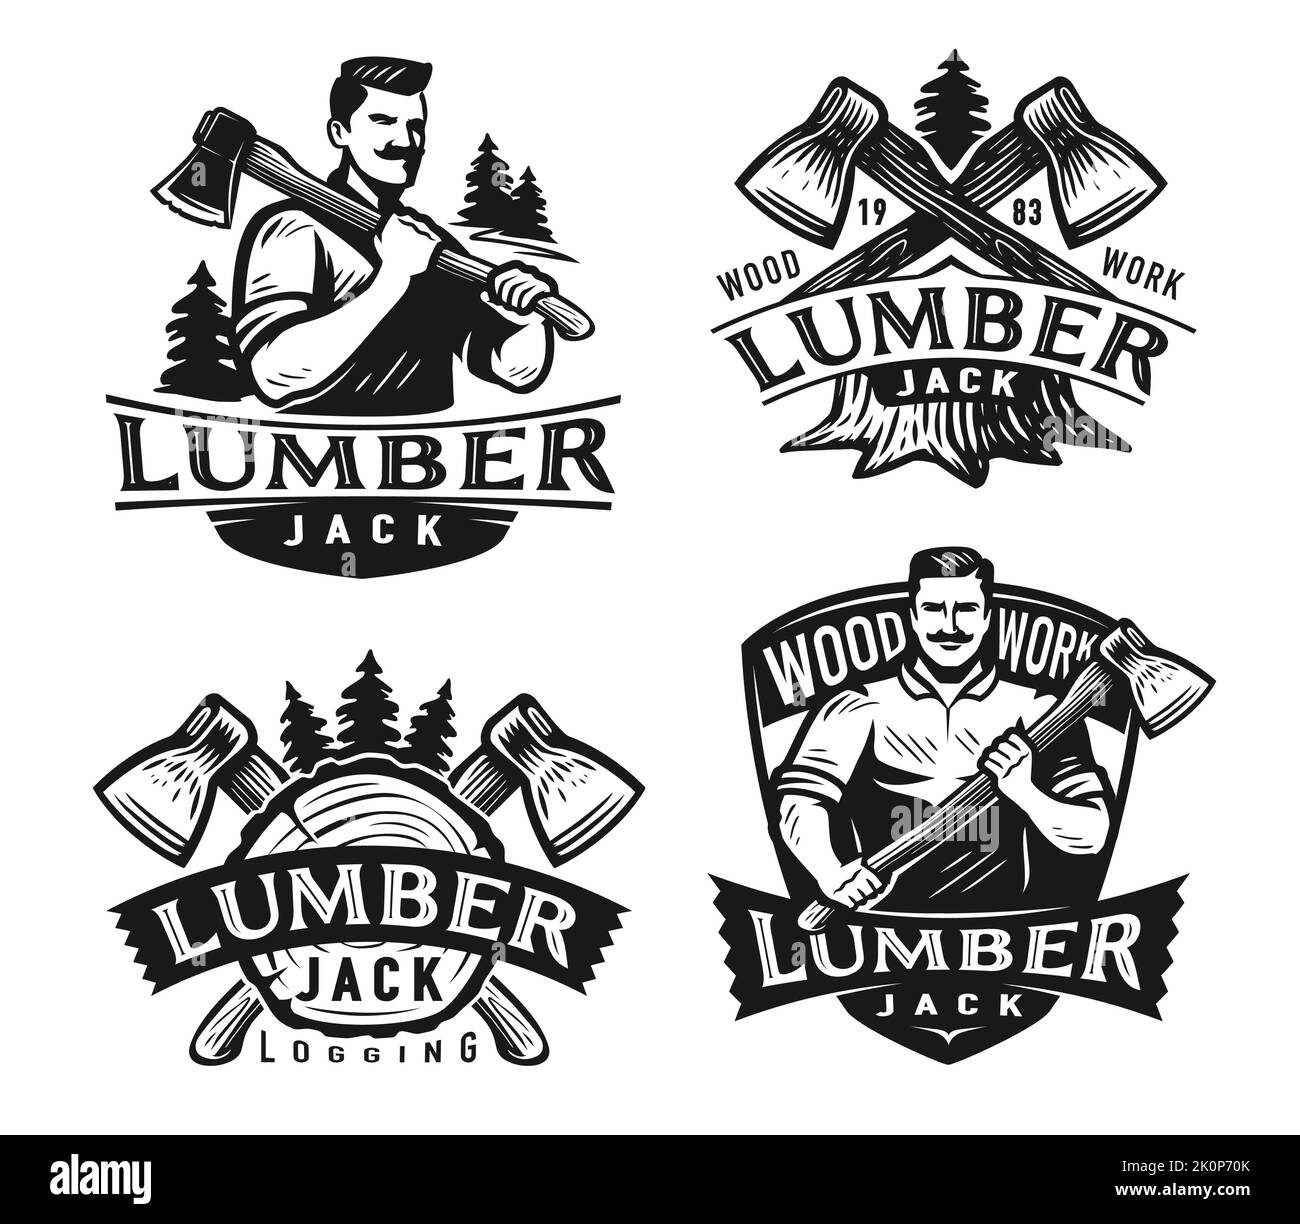 Juego de insignias Lumberjack. Emblema de madera, tala de árboles. Juego de etiquetas monocromas para la industria de la madera. Ilustración vectorial aislada Ilustración del Vector